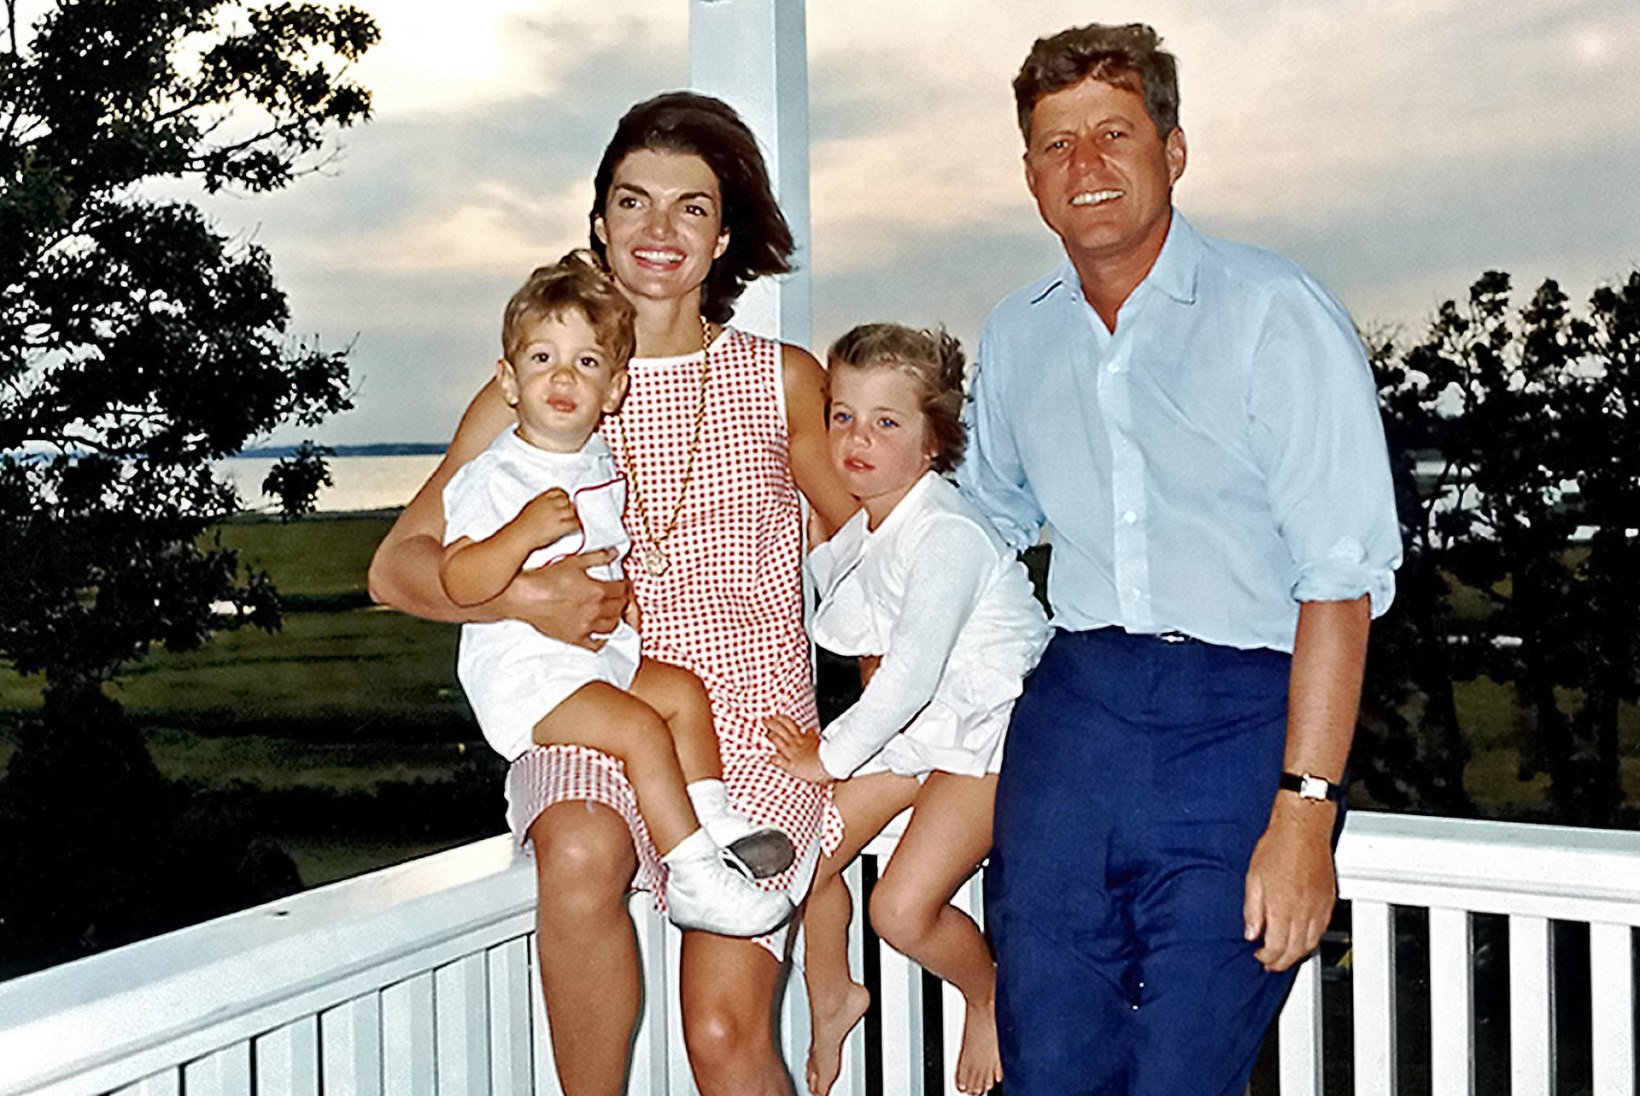 President Kennedy 20aastane armuke: „Olin kindel, et see on armastus.“